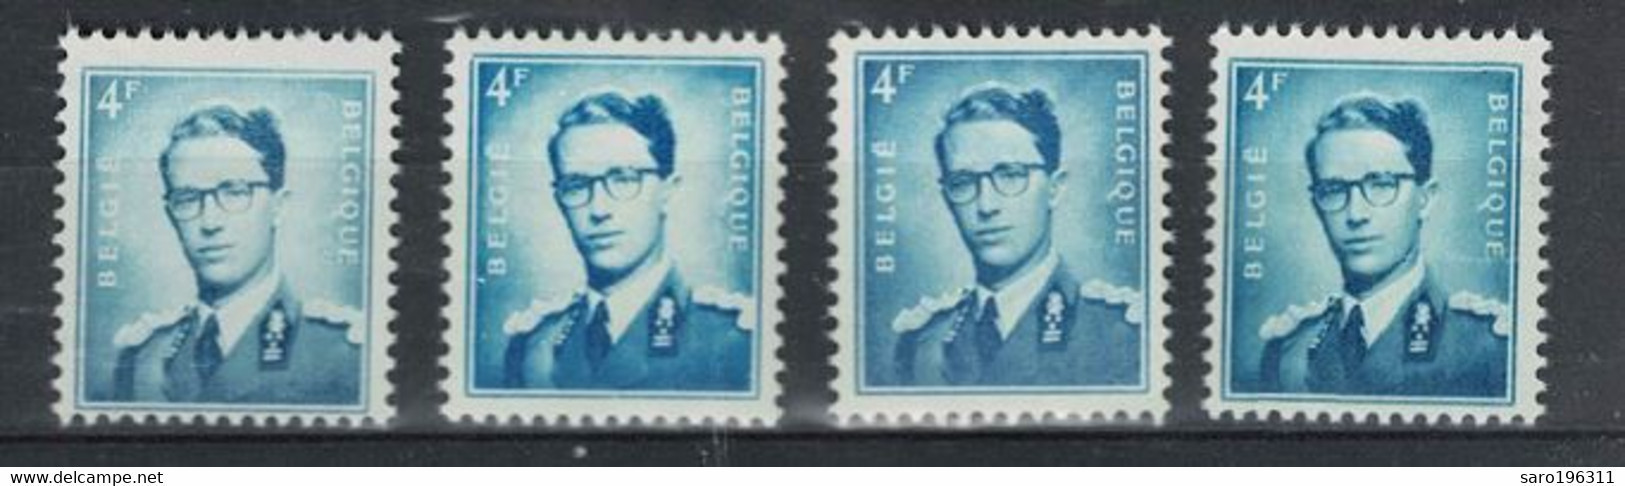 LIQUIDATION  ** / MNH  ROI BAUDOUIN N° 926 Avec  NUANCES à   1,39 - Unused Stamps